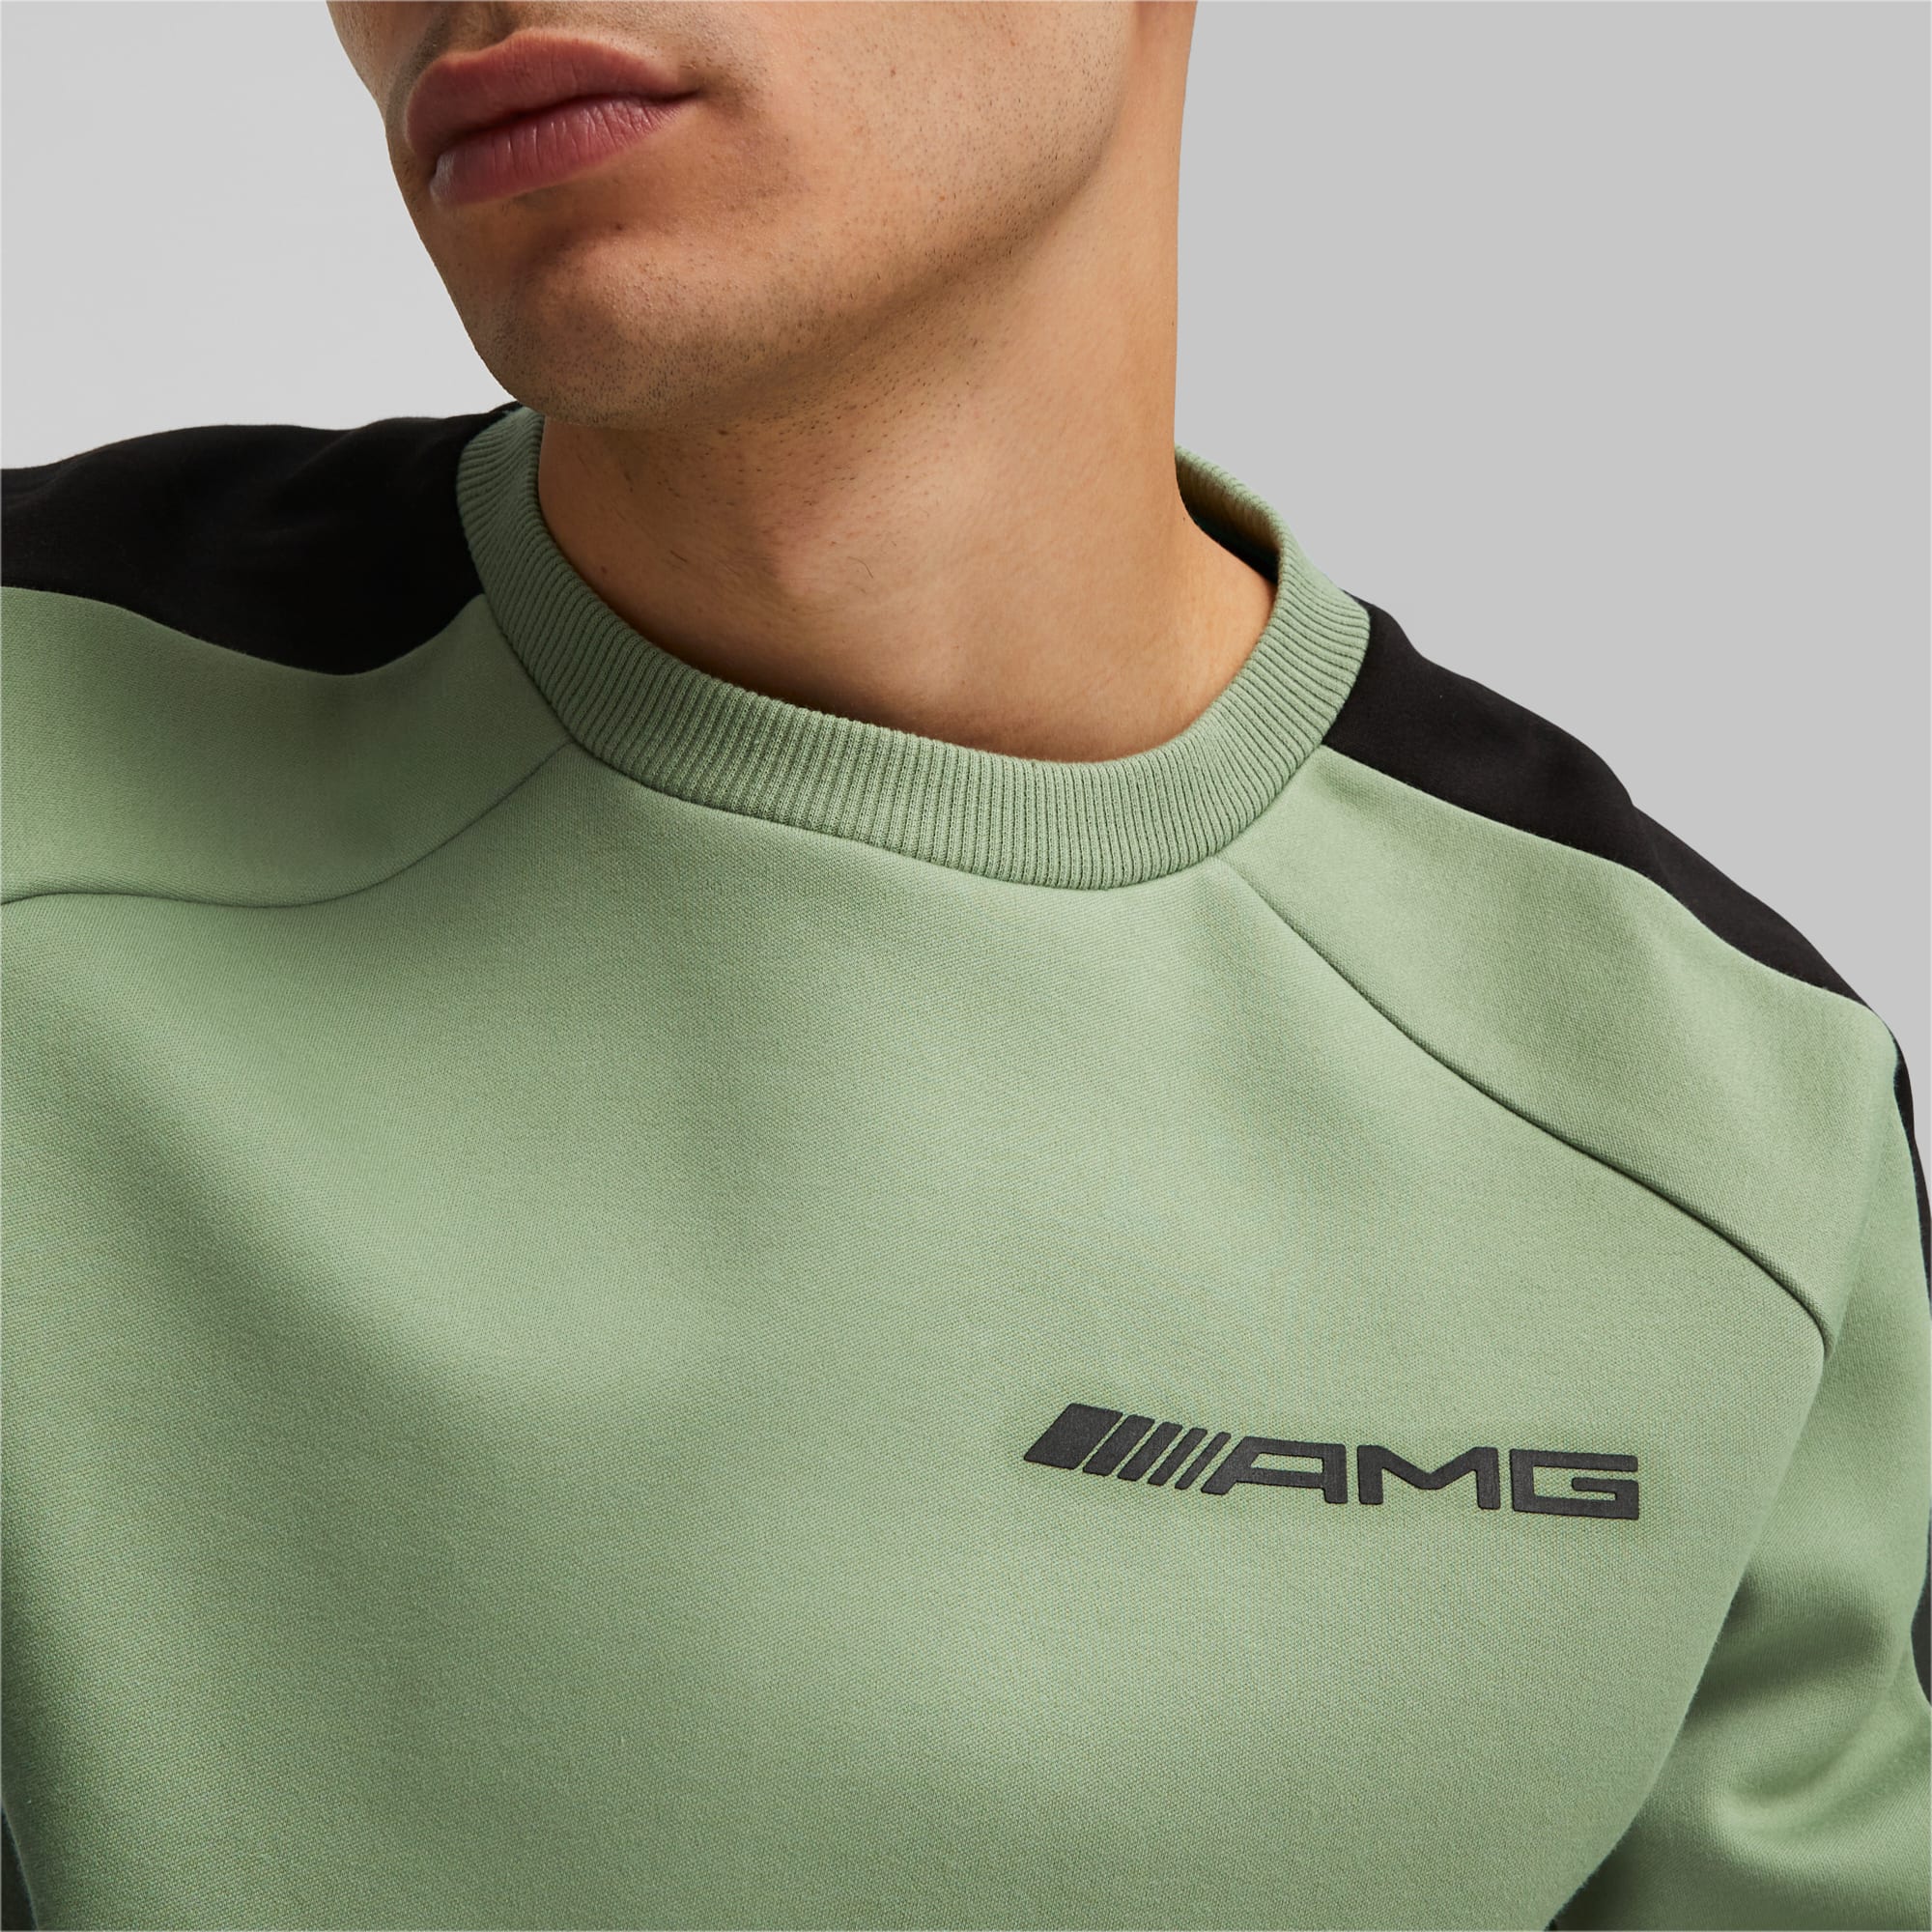 PUMA Mercedes-AMG Sweatshirt Herren, Grün, Größe: S, Kleidung